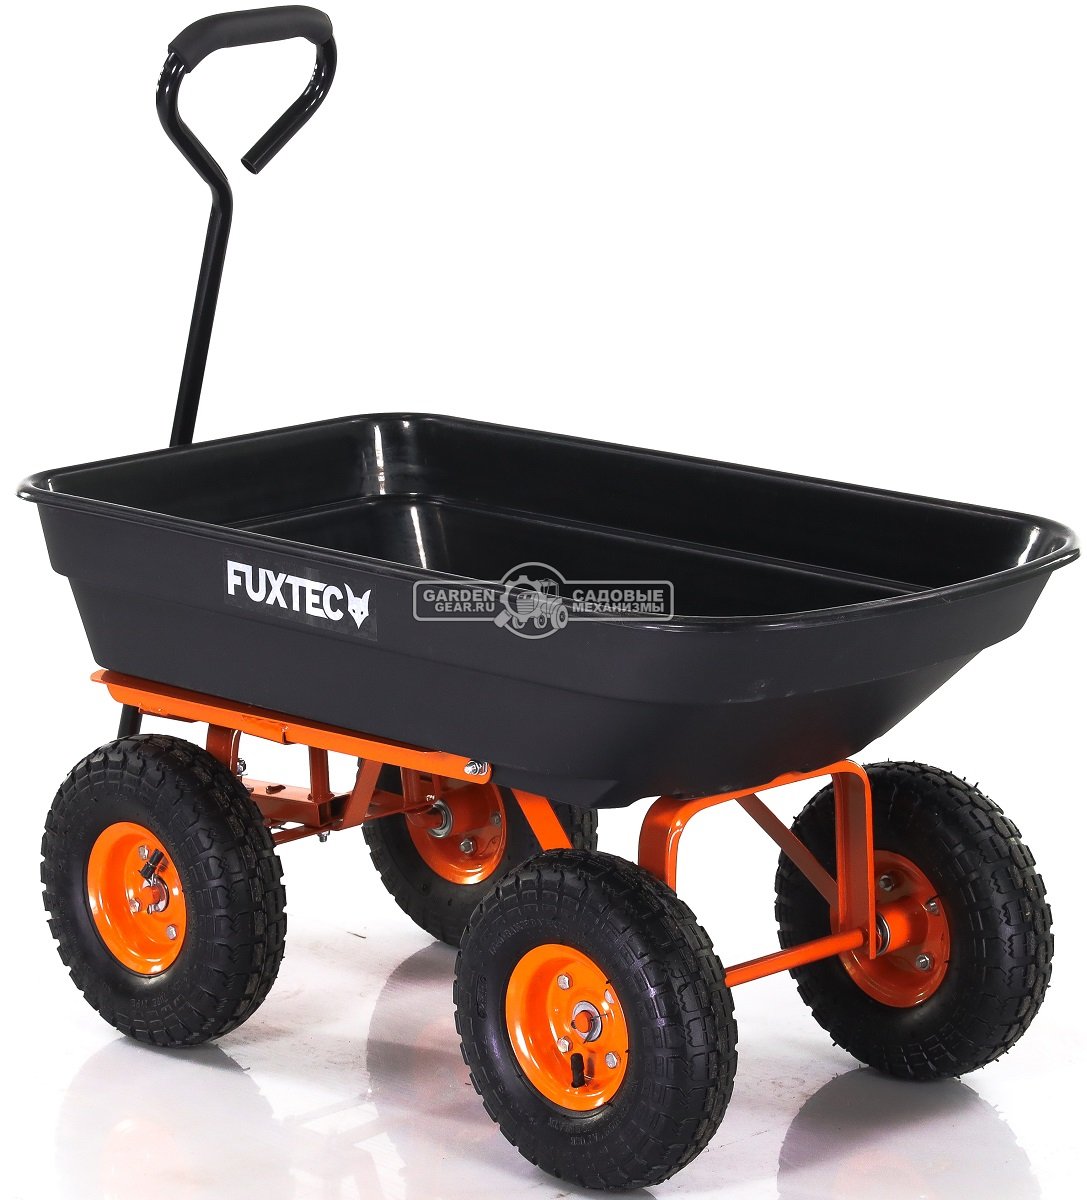 Тележка садовая Fuxtec FX-KW2175 с механизмом опрокидывания (4 колеса, кузов 85х46,5 см, корыто 110 л, 300 кг, вес 13 кг)